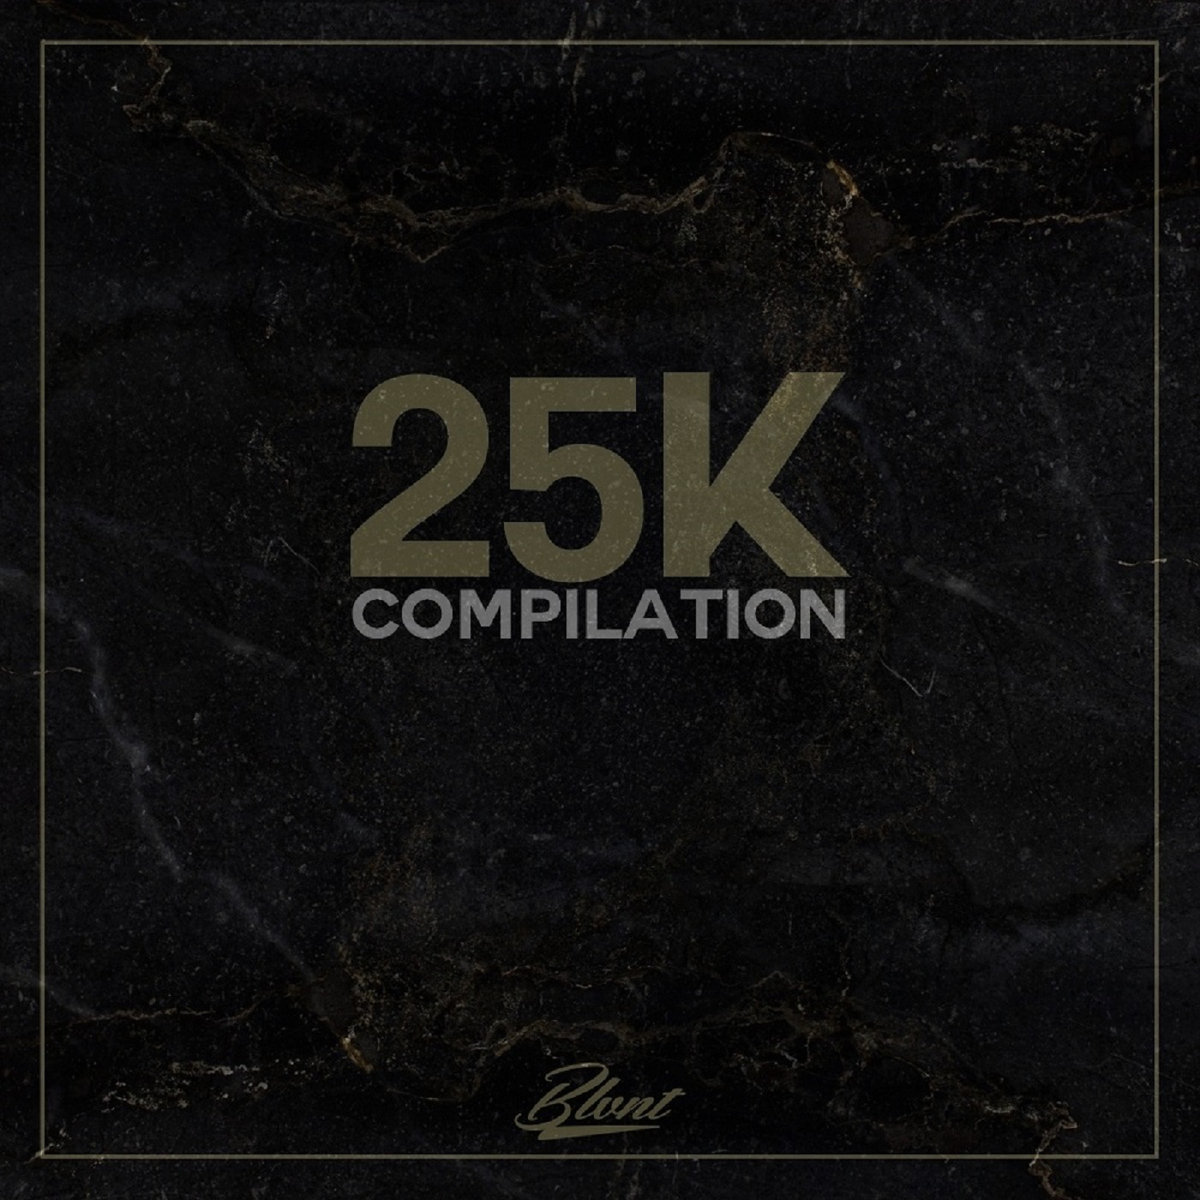 Blvnt Records - "25K COMPILATION" (Release)